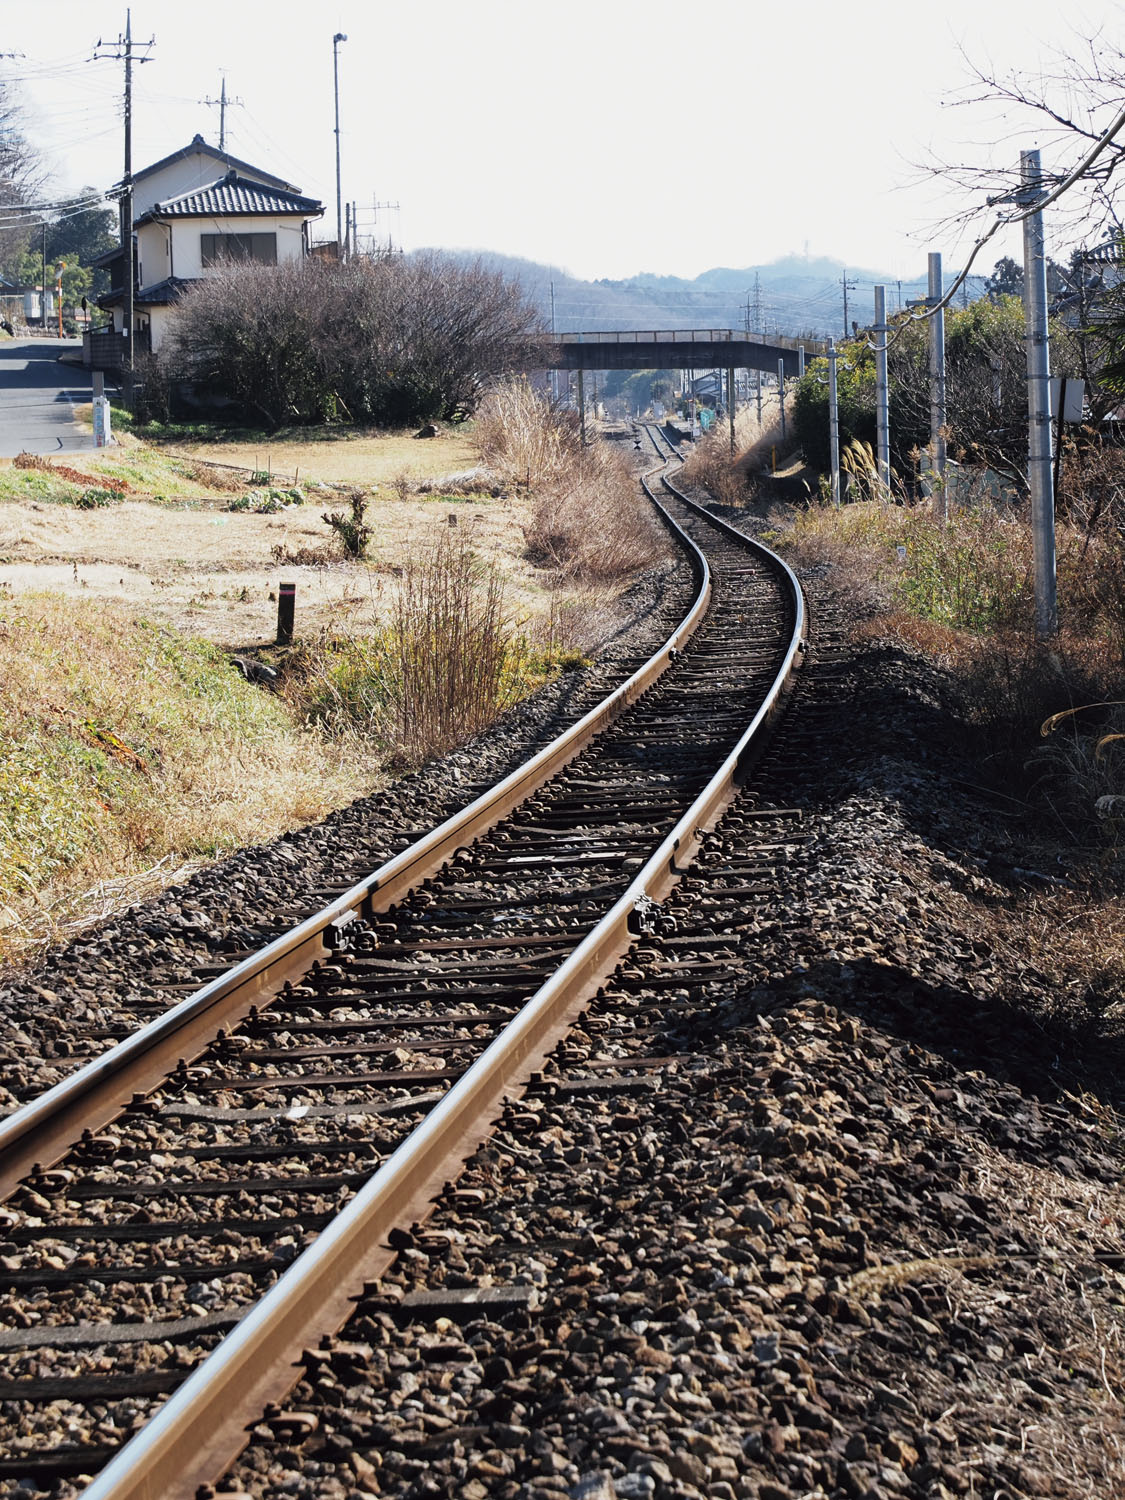 竹沢駅近くのJR八高線。線路は何度も見たが、走っている電車を見たことがない。八高線は１時間に１本程度の運行。